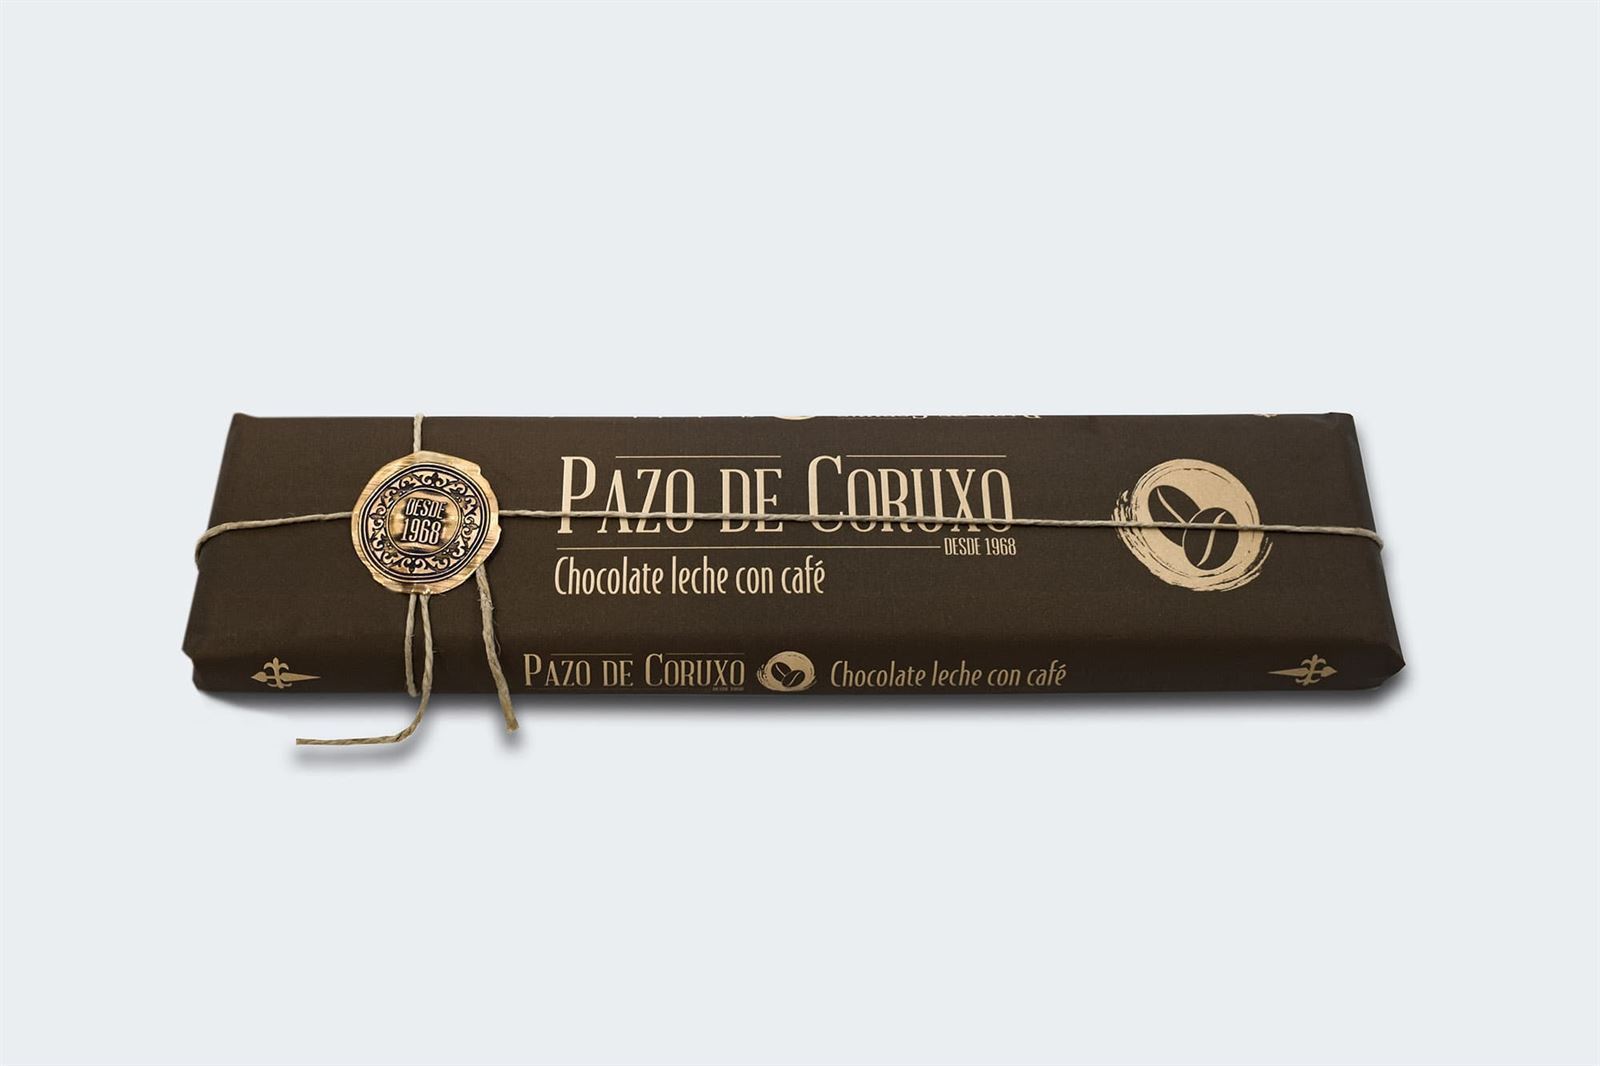 Tableta chocolate con leche con café Pazo de Coruxo 300grs - Imagen 1